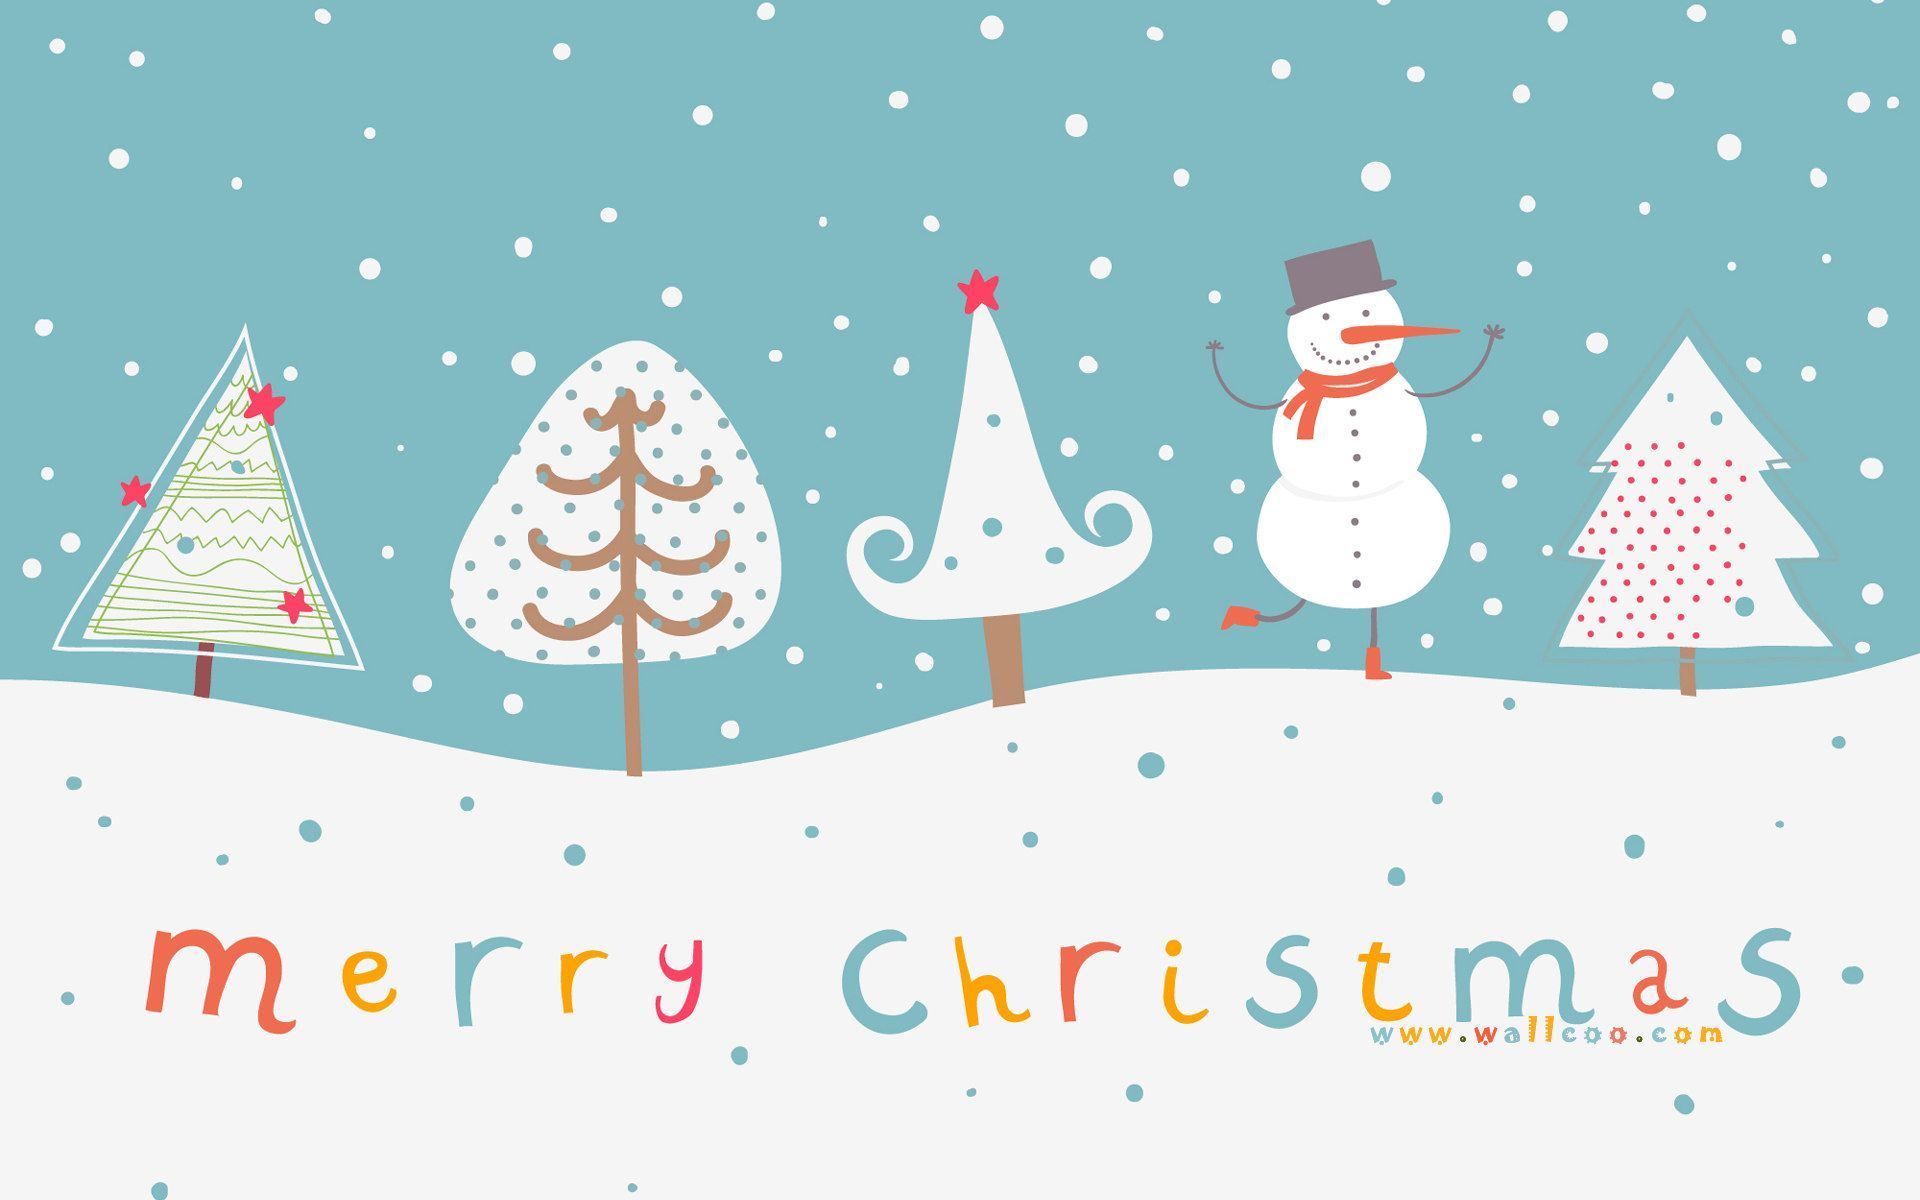 HD Widescreen Christmas art, christmas design and christmas illustrations 圣诞节插画 192. Cute christmas wallpaper, Cute christmas background, Christmas illustration